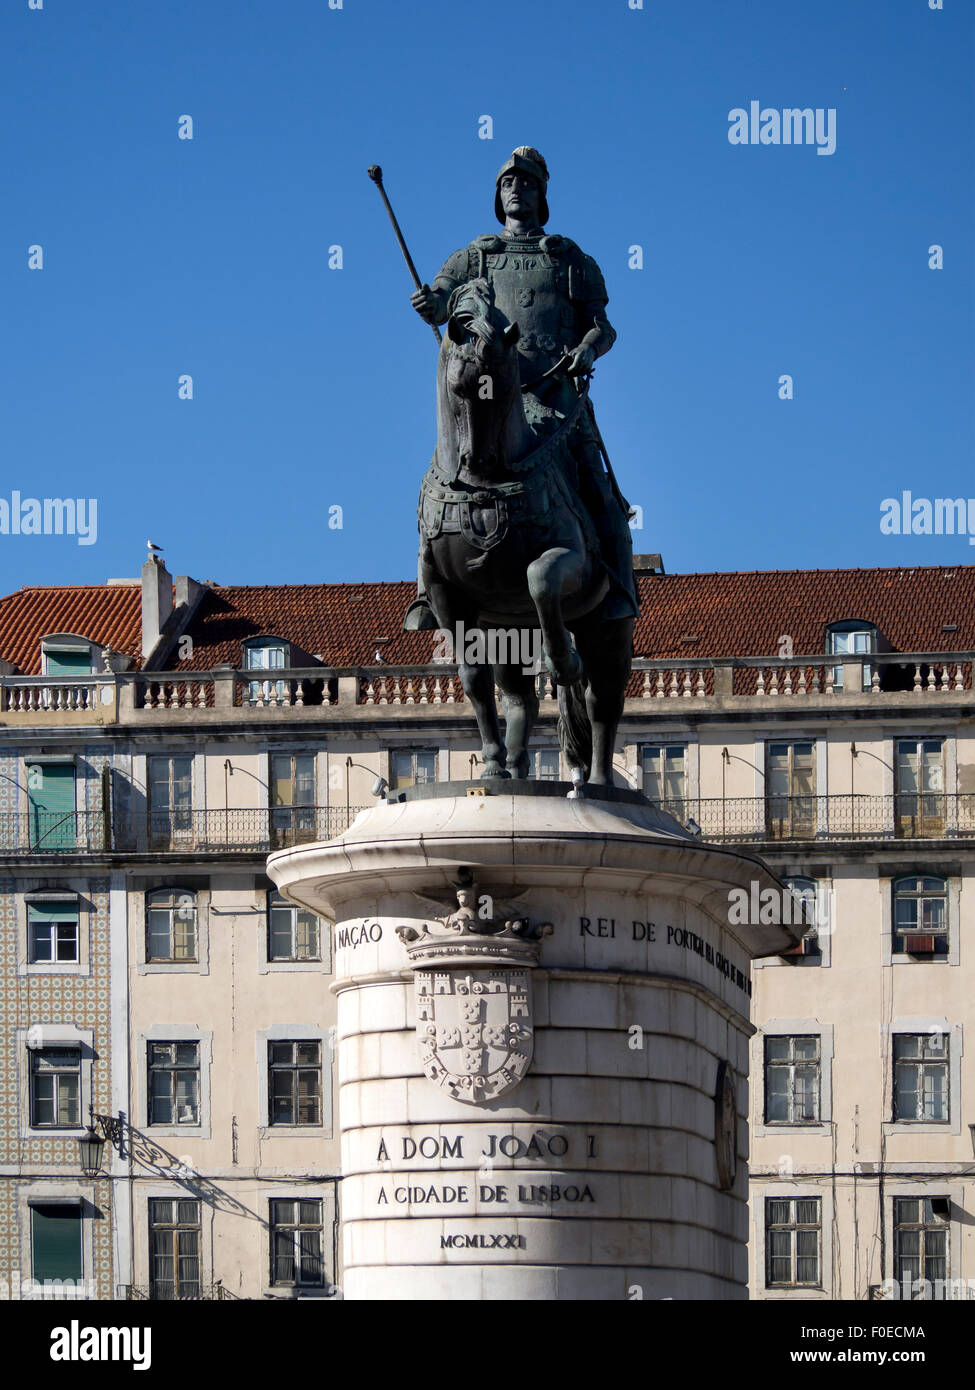 LISSABON, PORTUGAL - 07. MÄRZ 2015: Reiterstatue von Dom Joao I (John I) in Praca da Figueira Stockfoto